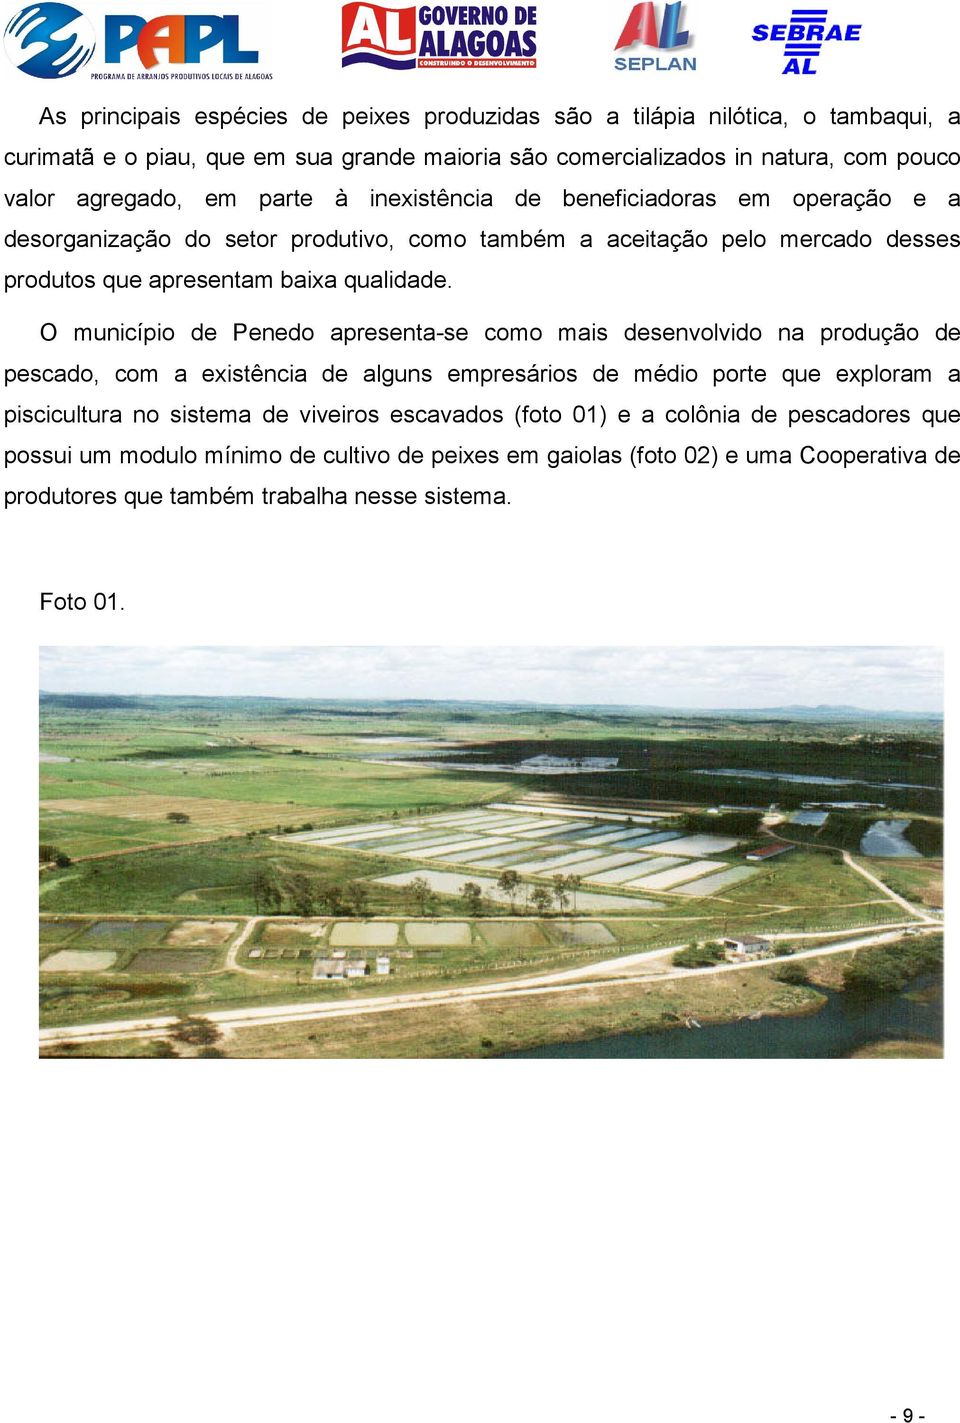 O município de Penedo apresenta-se como mais desenvolvido na produção de pescado, com a existência de alguns empresários de médio porte que exploram a piscicultura no sistema de viveiros